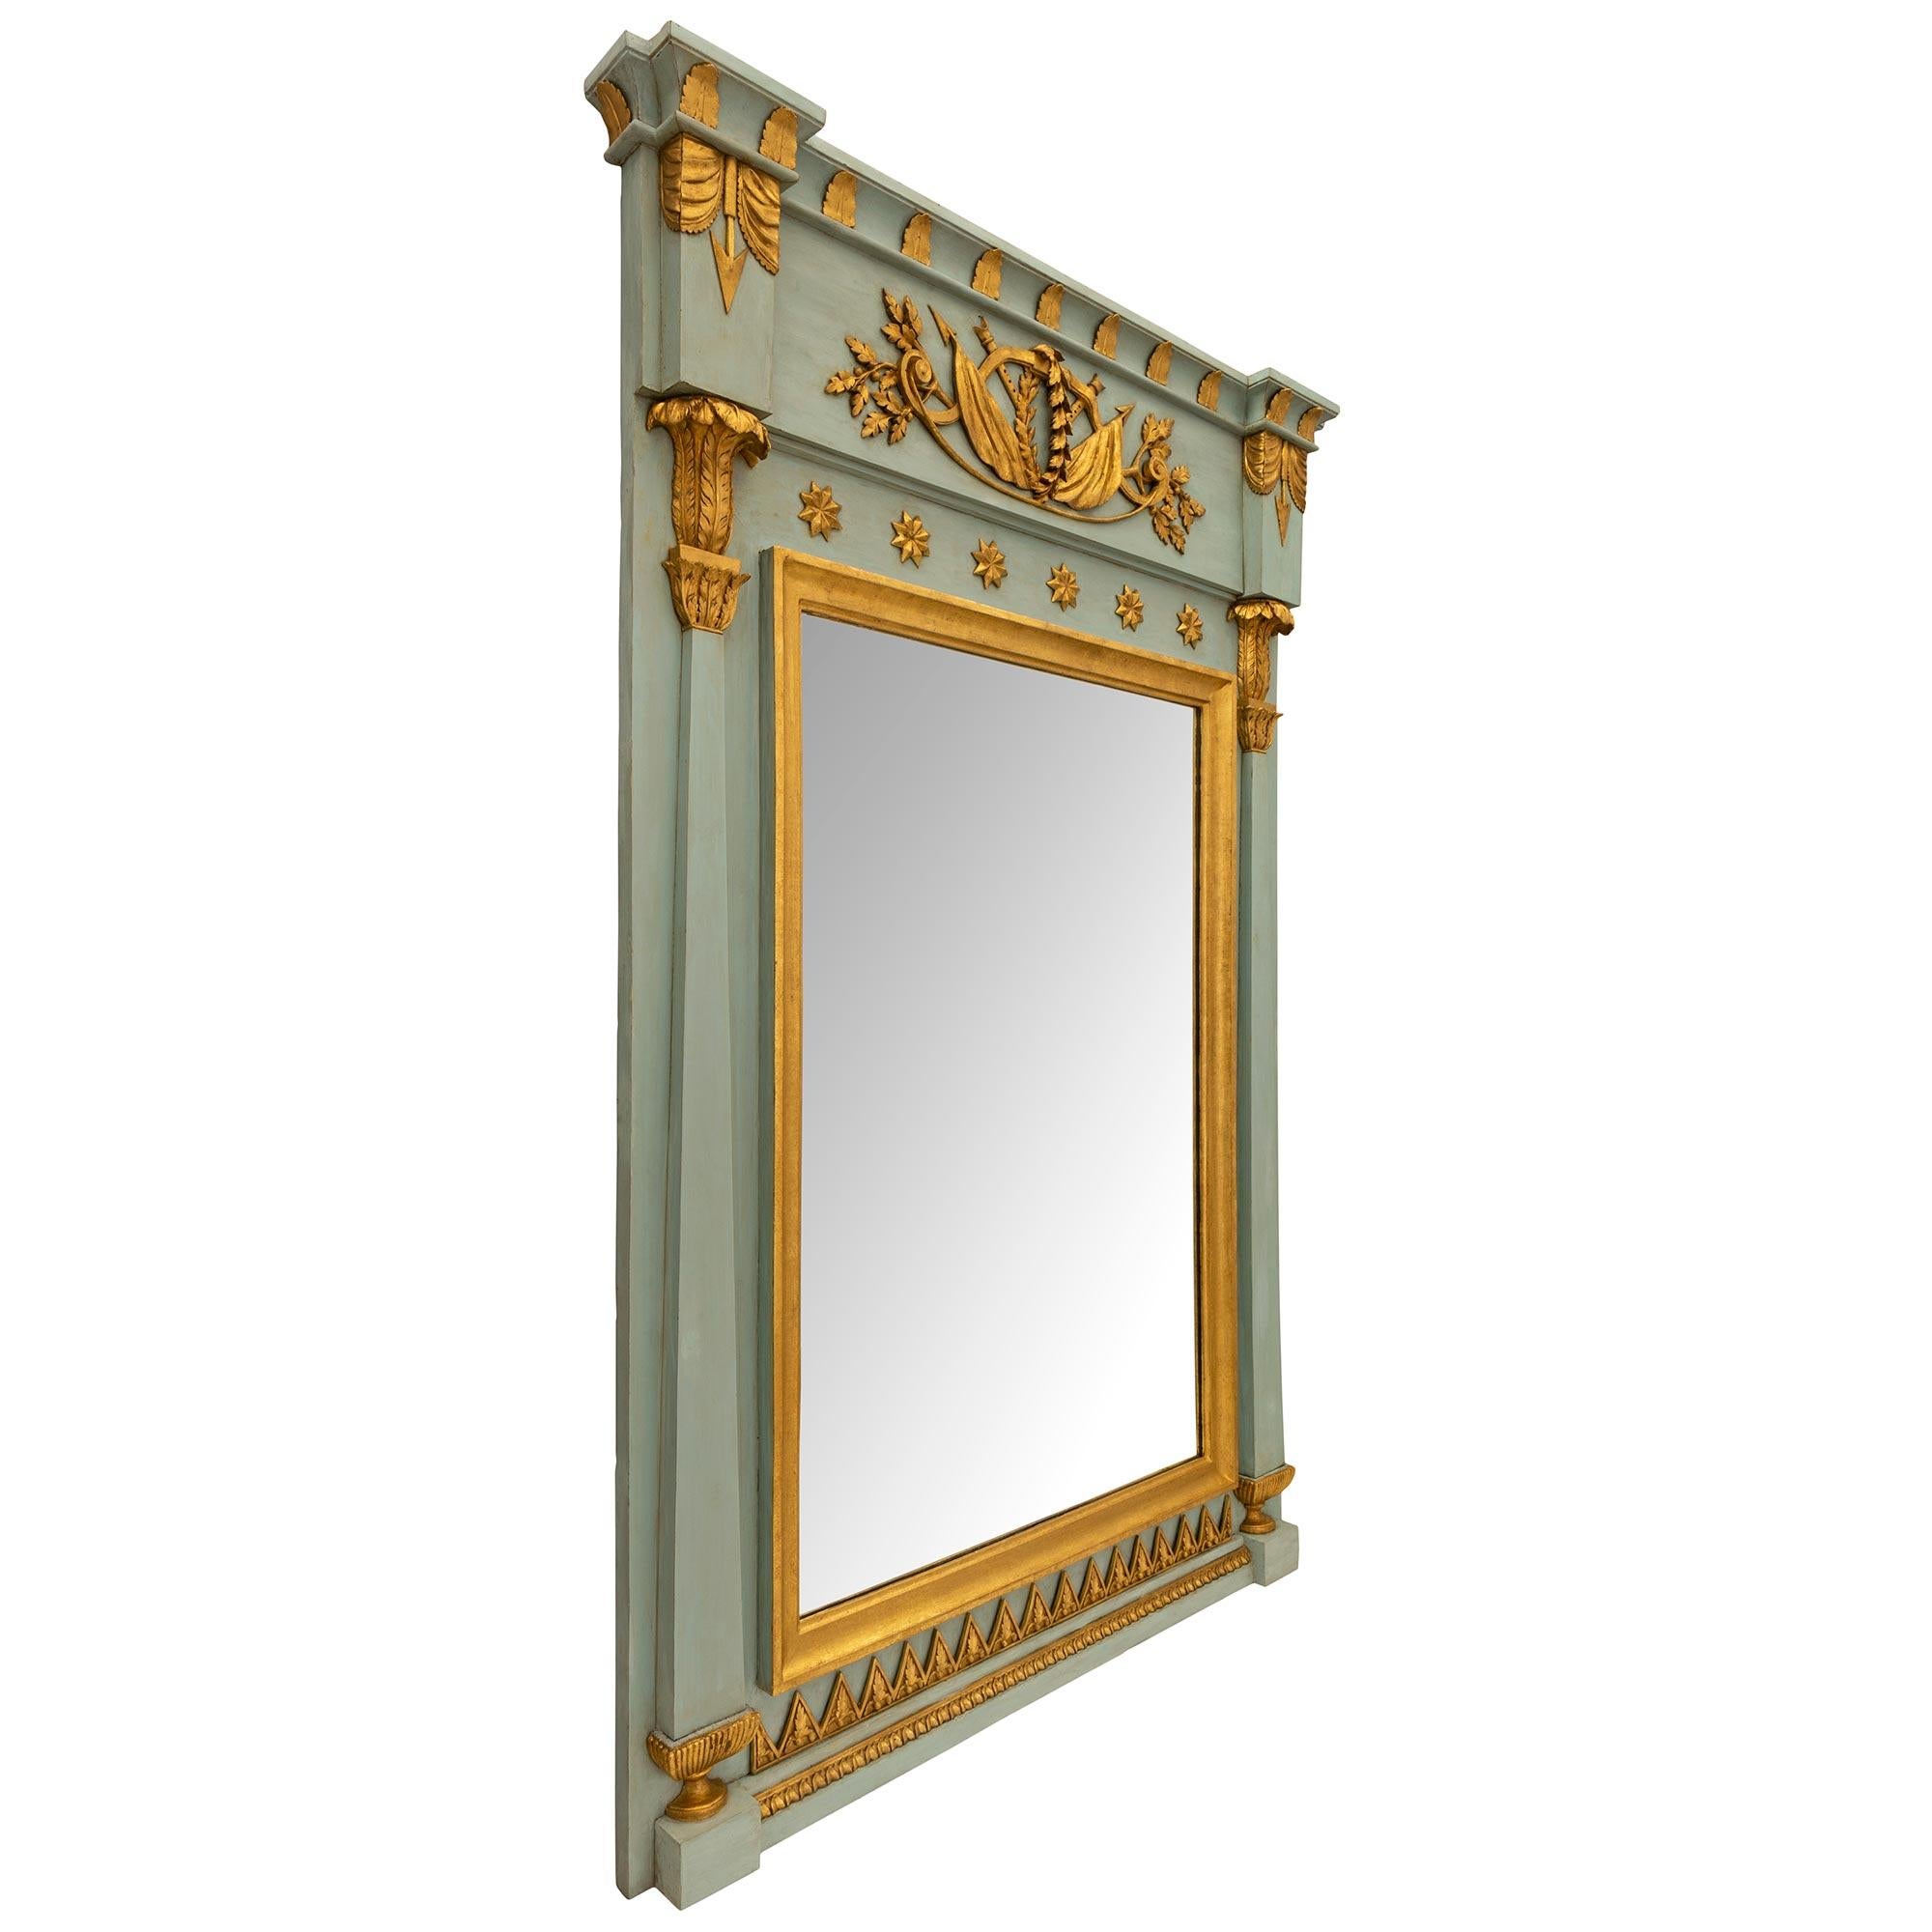 Miroir en bois patiné et doré d'époque 1er Empire, vers 1805. Le miroir présente une plaque centrale encadrée d'une élégante bordure en bois doré tacheté et flanquée de chaque côté d'étonnantes colonnes fuselées avec de fines plinthes cannelées et